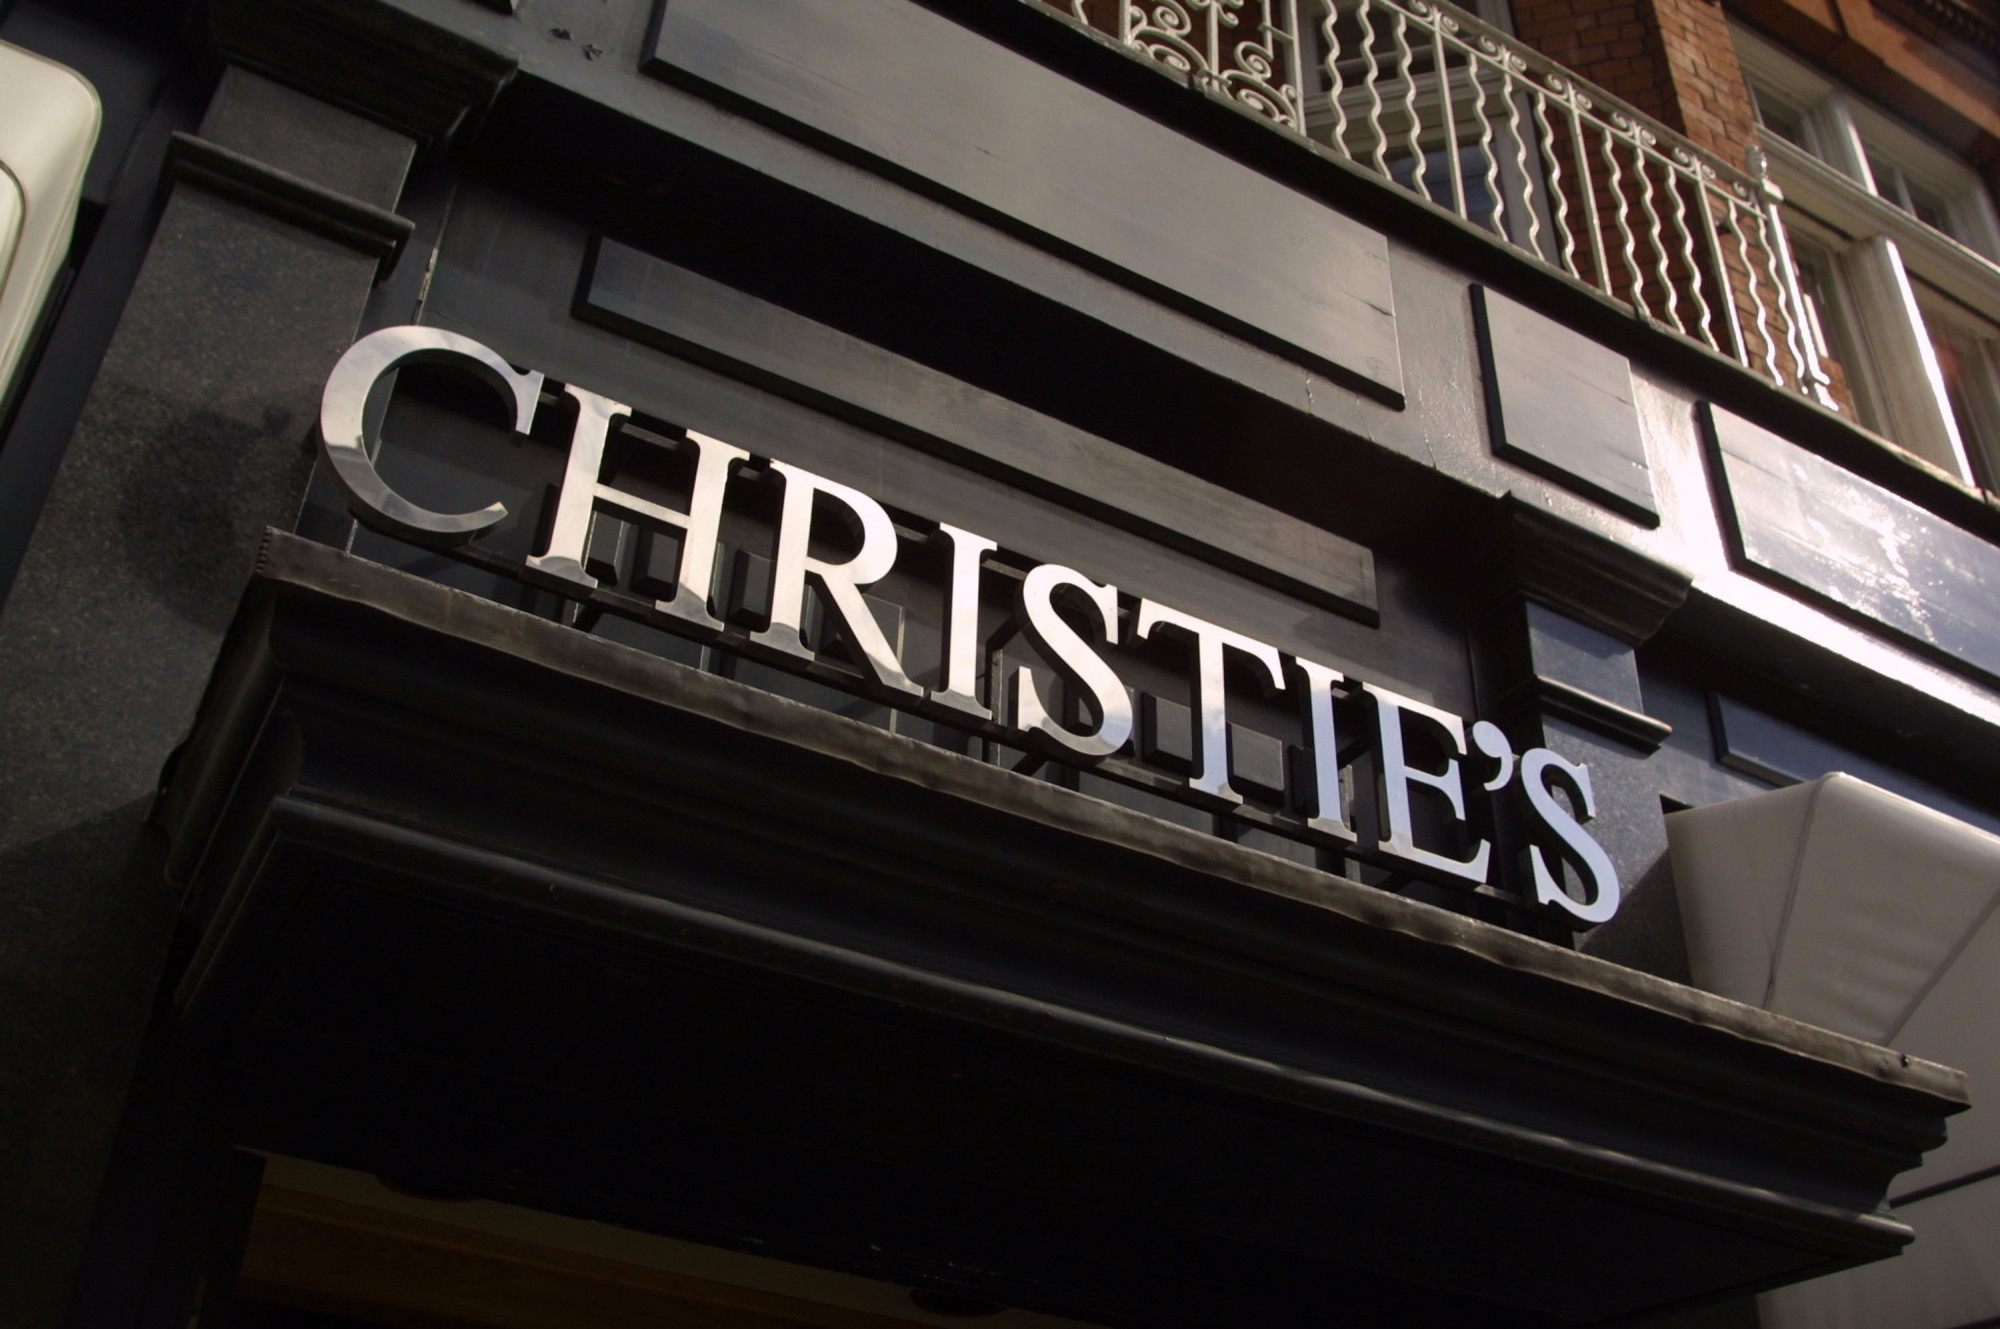      - Christie's